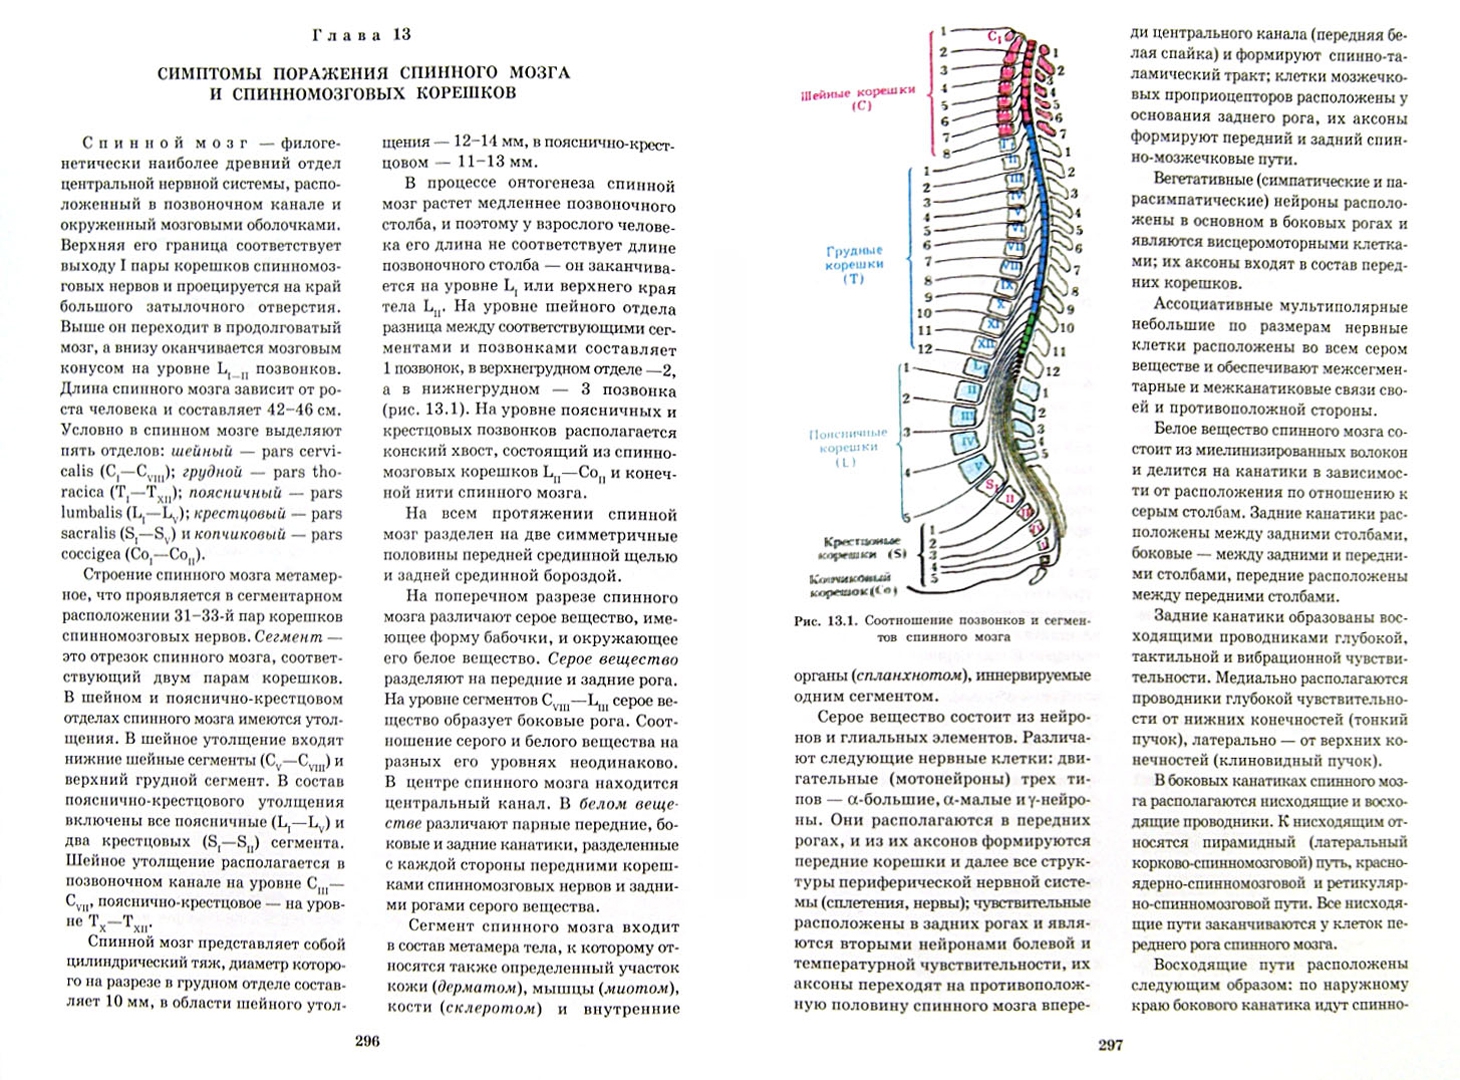 Иллюстрация 1 из 49 для Топическая диагностика заболеваний нервной системы. Руководство для врачей - Скоромец, Скоромец, Скоромец | Лабиринт - книги. Источник: Лабиринт